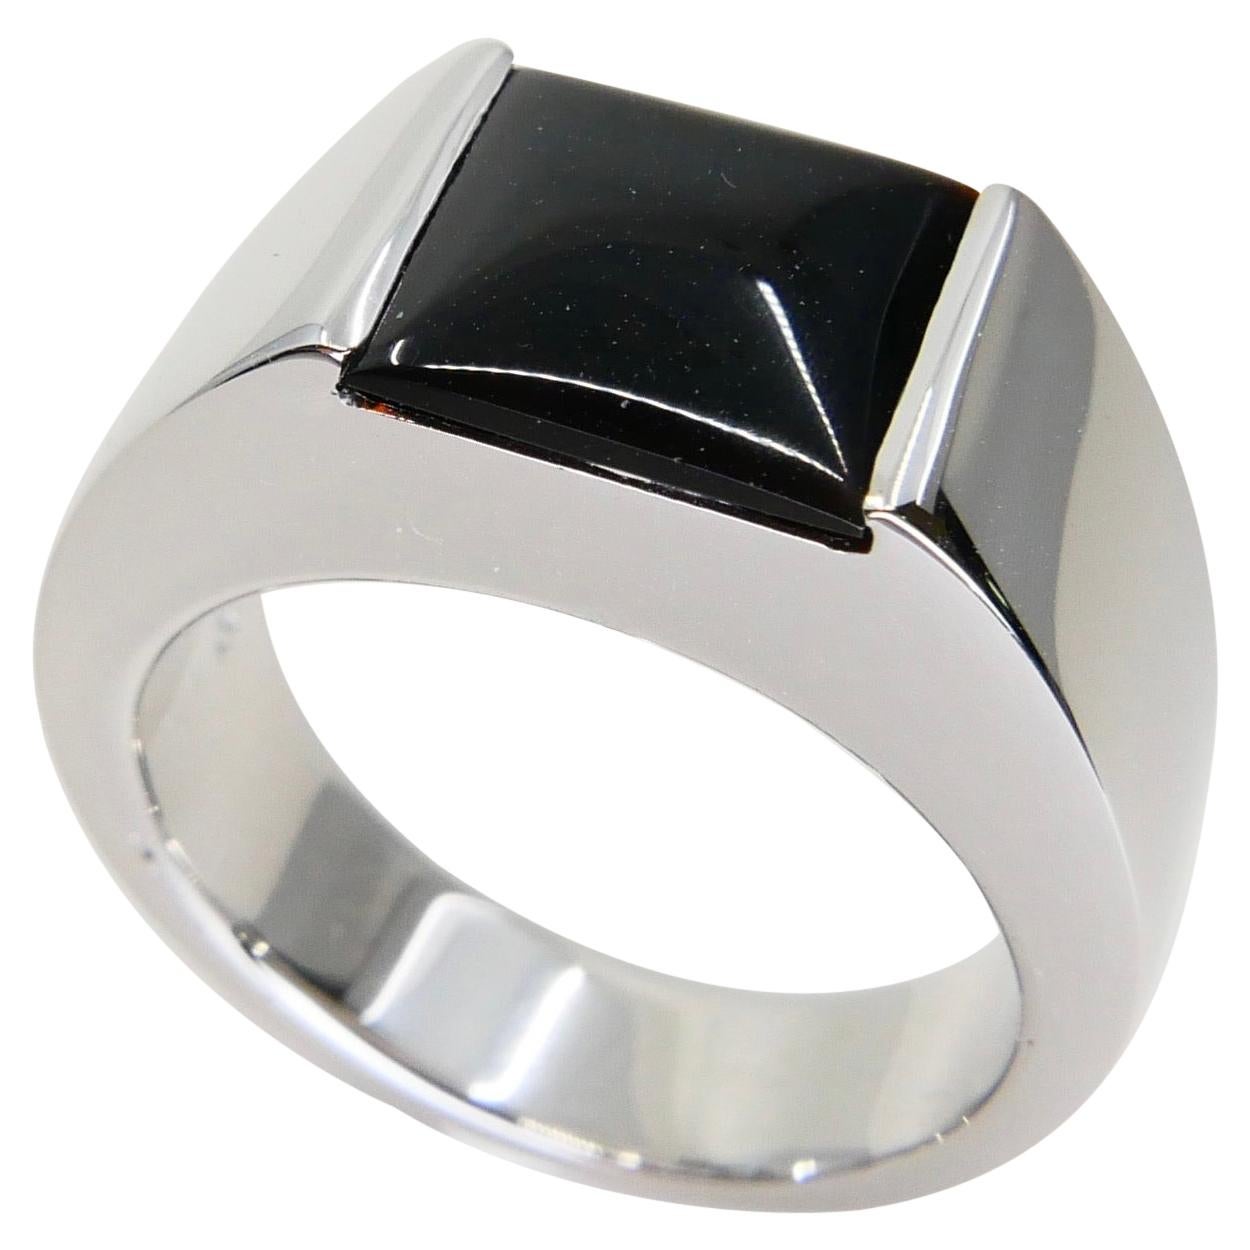 Unisex 18k White Gold & Onyx Ring, Men's Pinky Ring. N.O.S